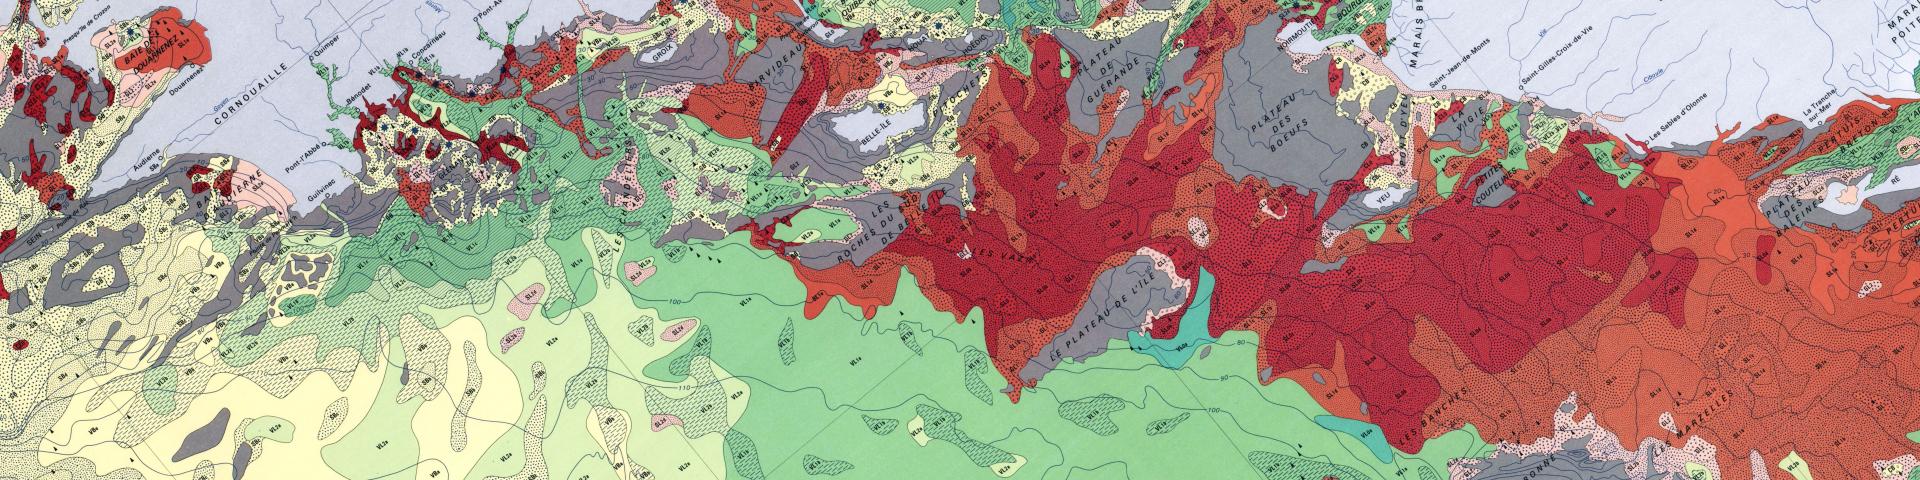 Extrait de la carte à 1/500 000 des sédiments superficiels marins du plateau continental du Golfe de Gascogne